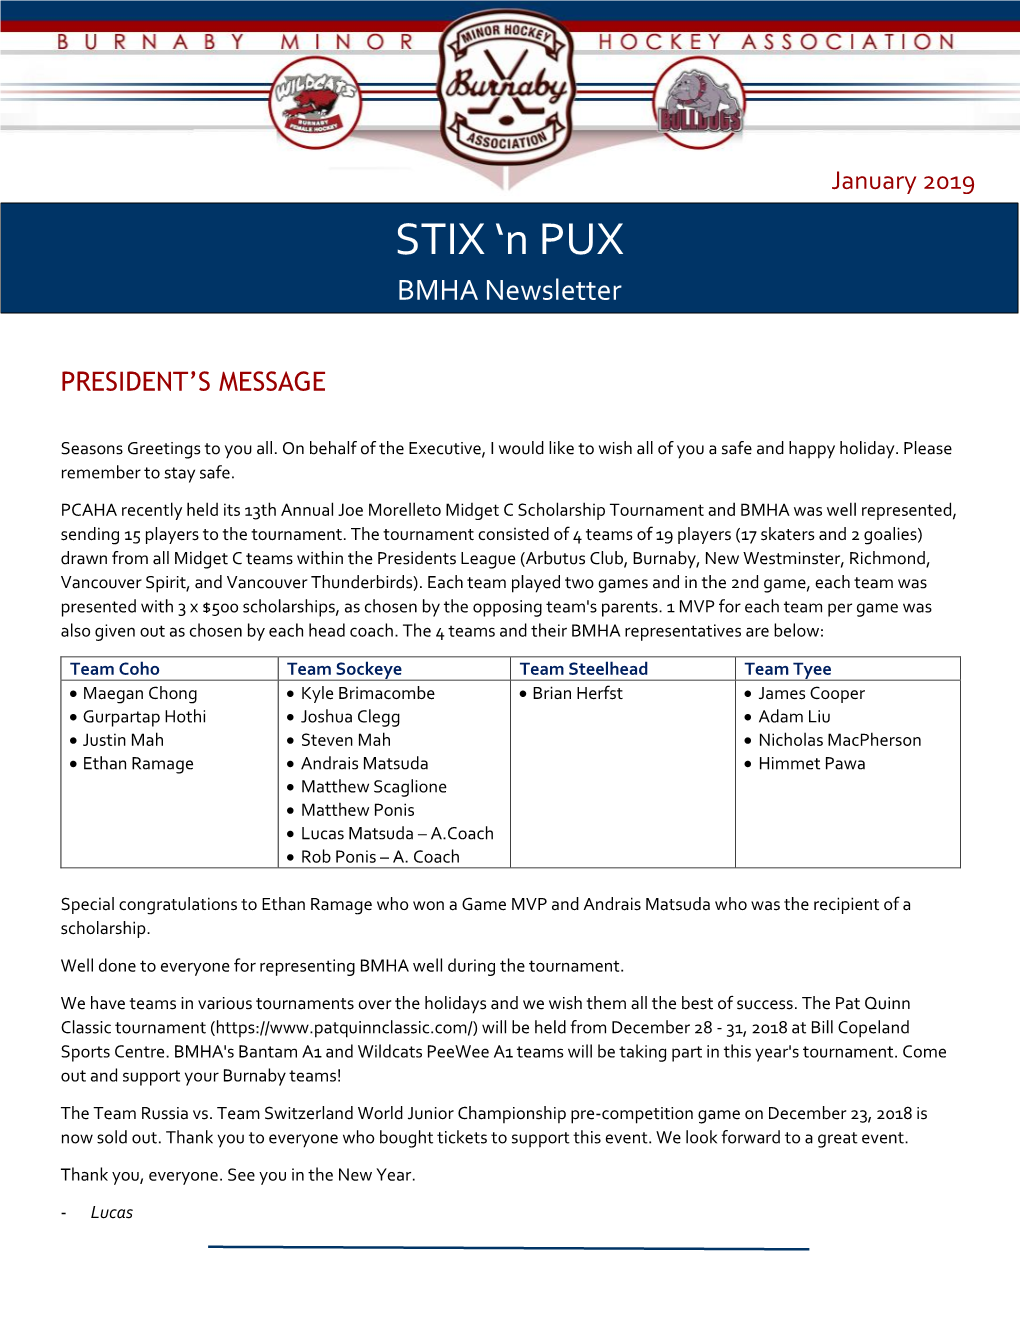 STIX ‘N PUX - BMHA Newsletter